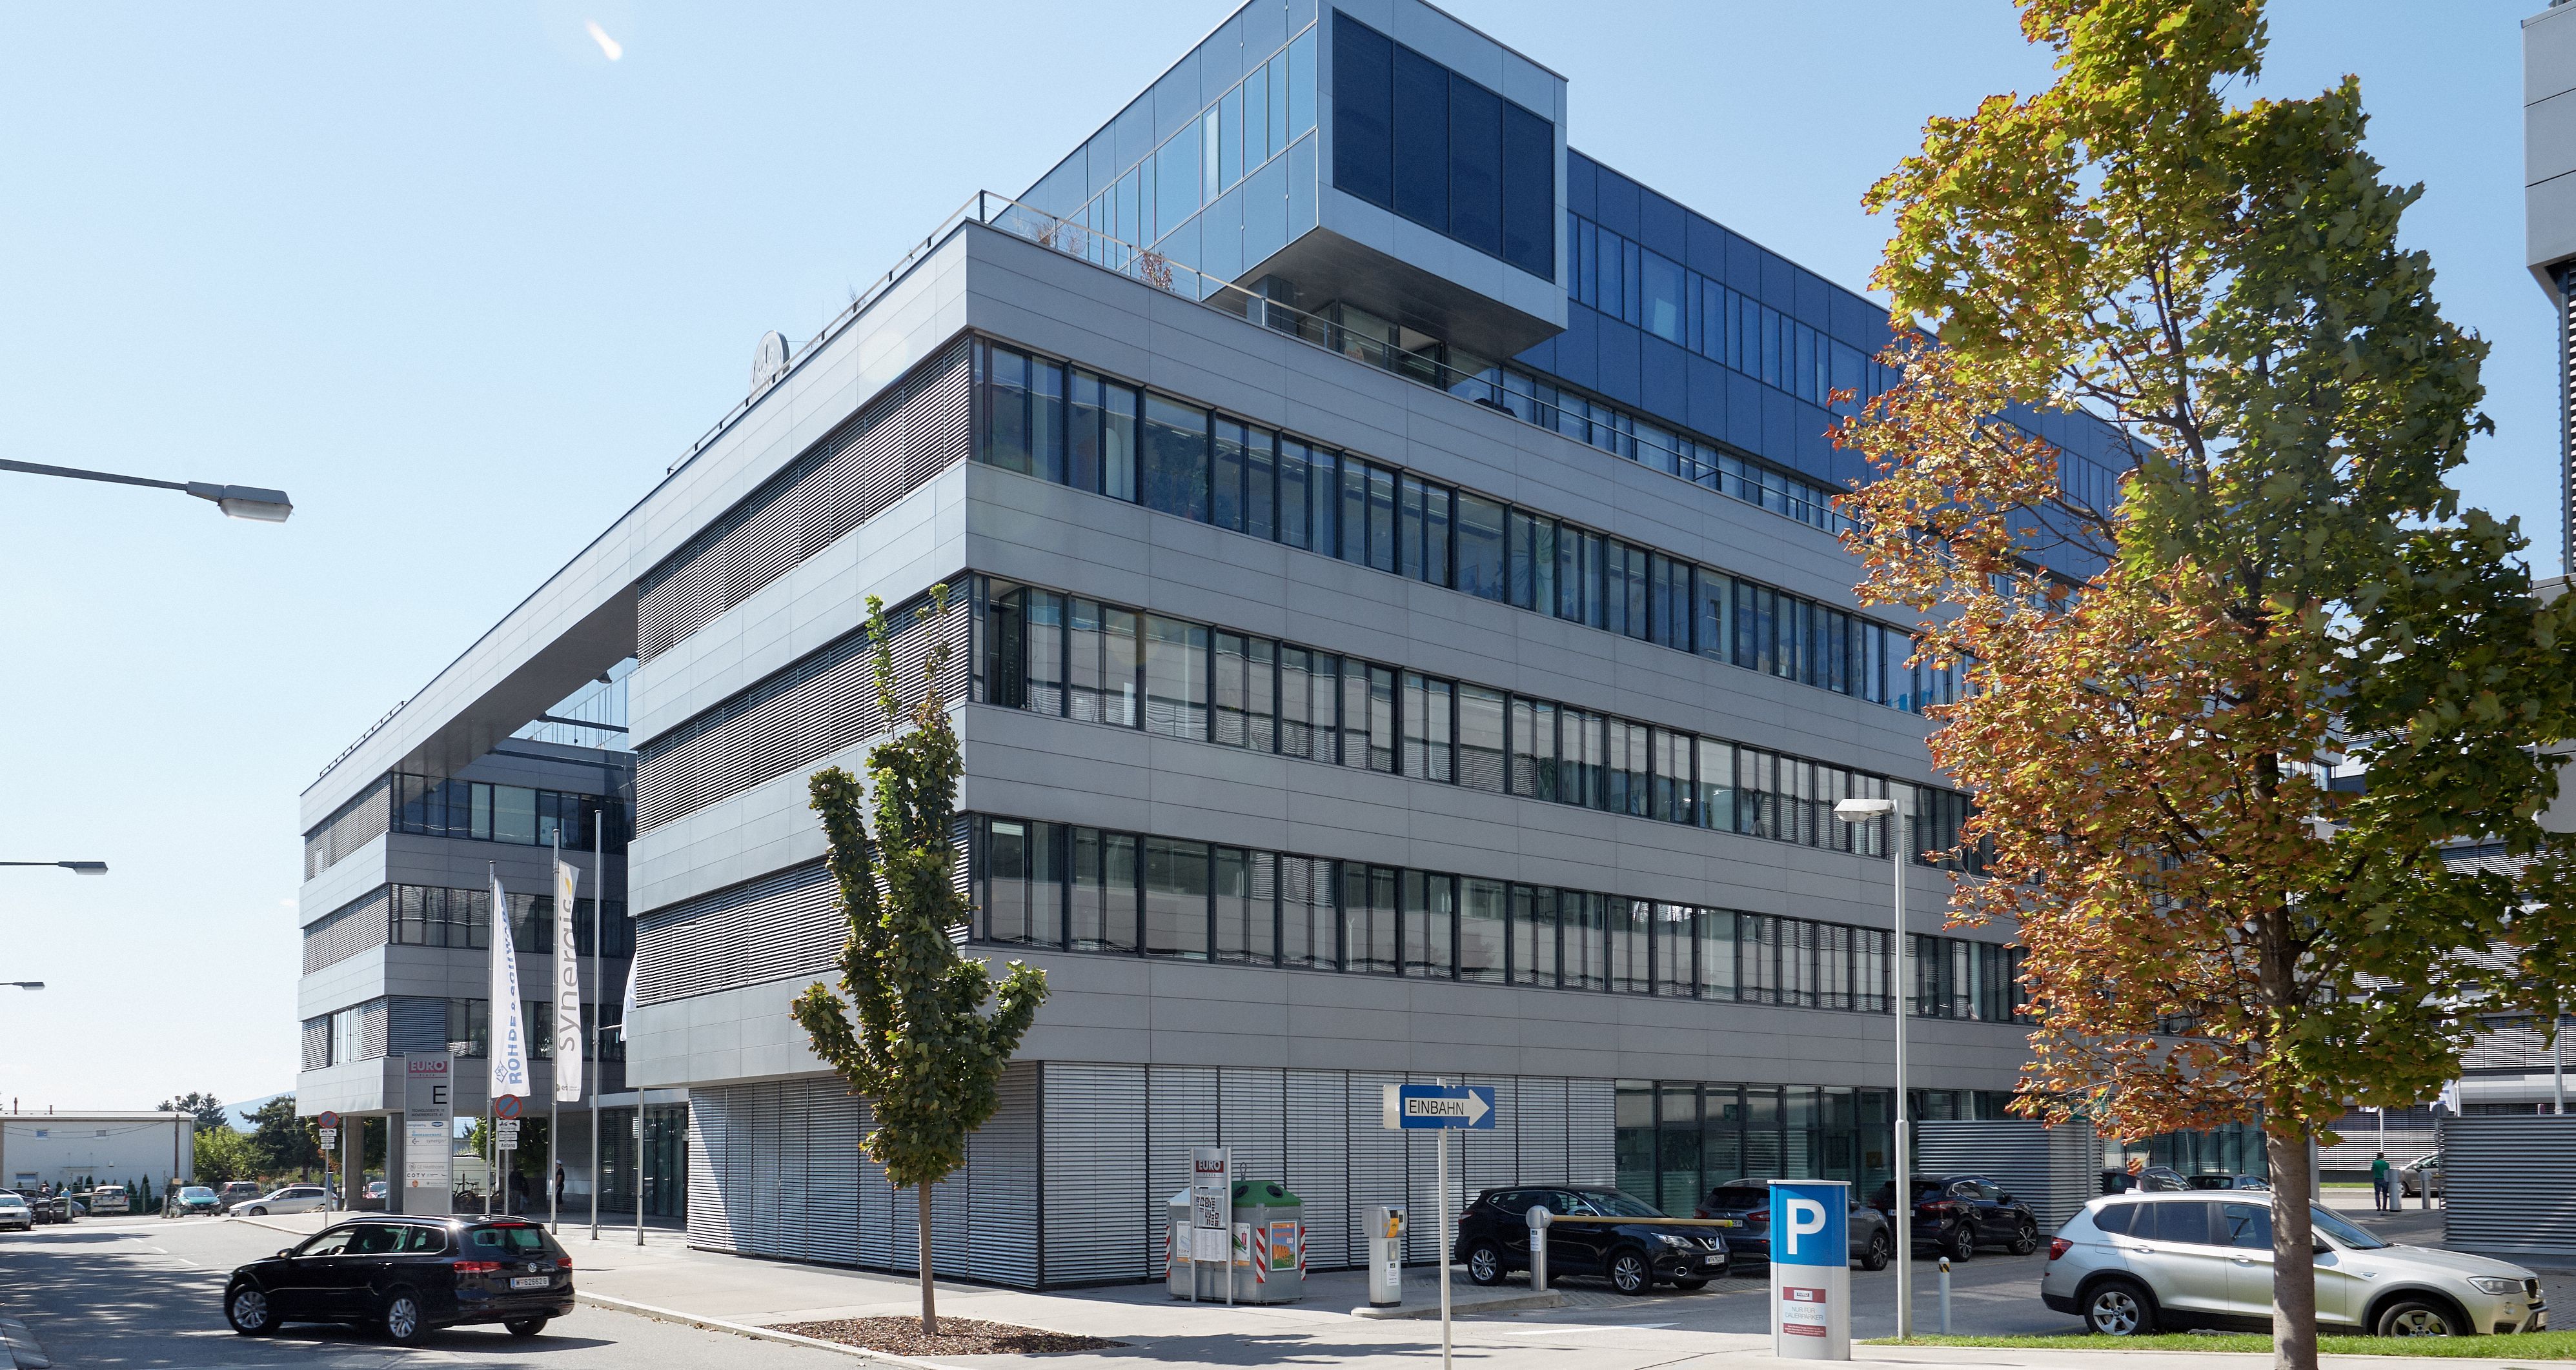 Foto: modernes Bürogebäude mit sechs Geschoßen und Alu-Glasfassade; in der Mitte des Bildes weist ein „Einbahn“-Schild in eine Einbahnstraße an der rechten Seite des Gebäudes 